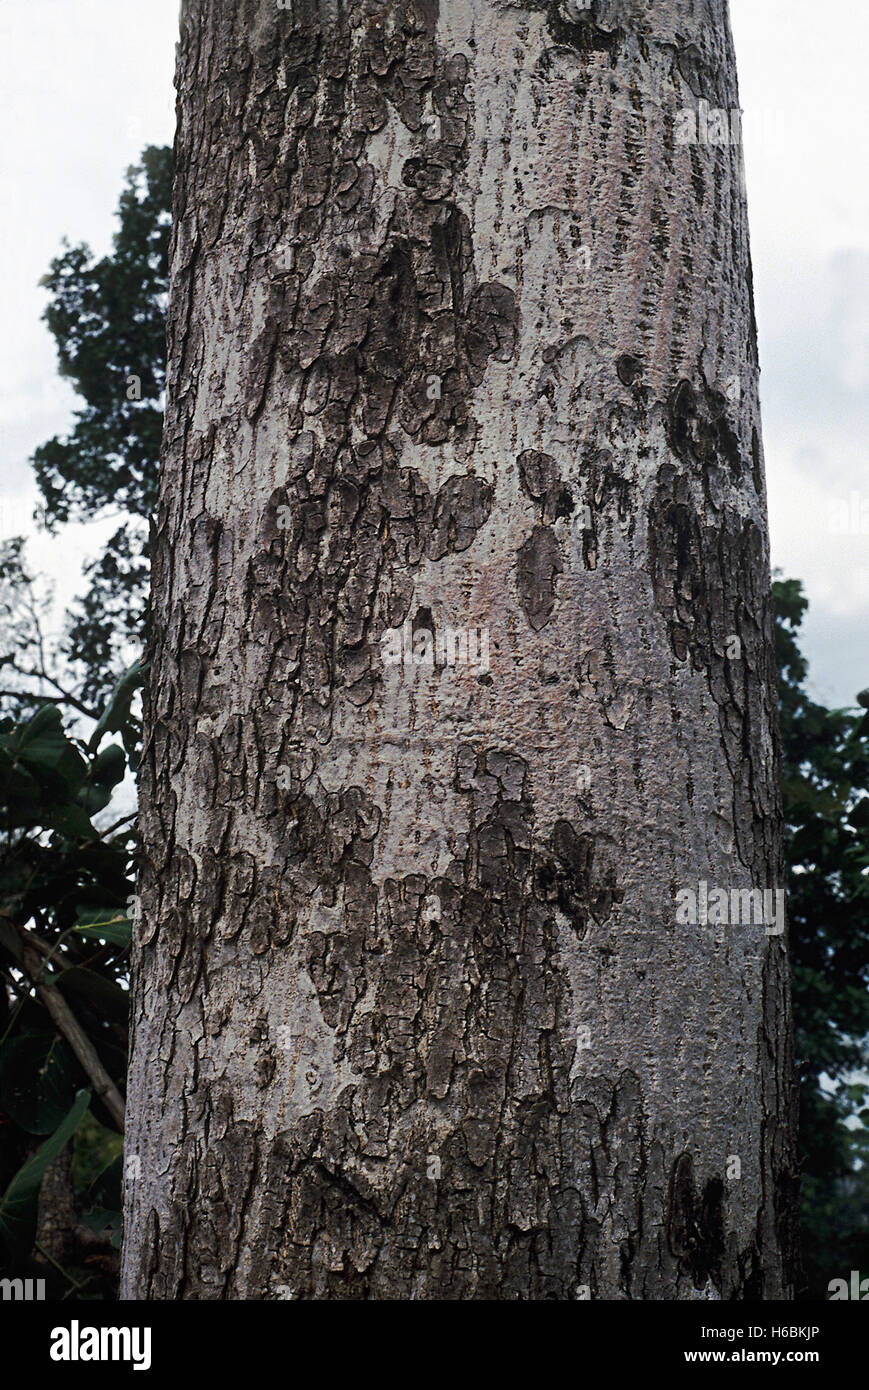 Odina wodier. écorce. famille : Hydrangeaceae. un arbre à feuilles caduques dans les forêts de l'Inde péninsulaire. La gomme est utilisée pour siz Banque D'Images